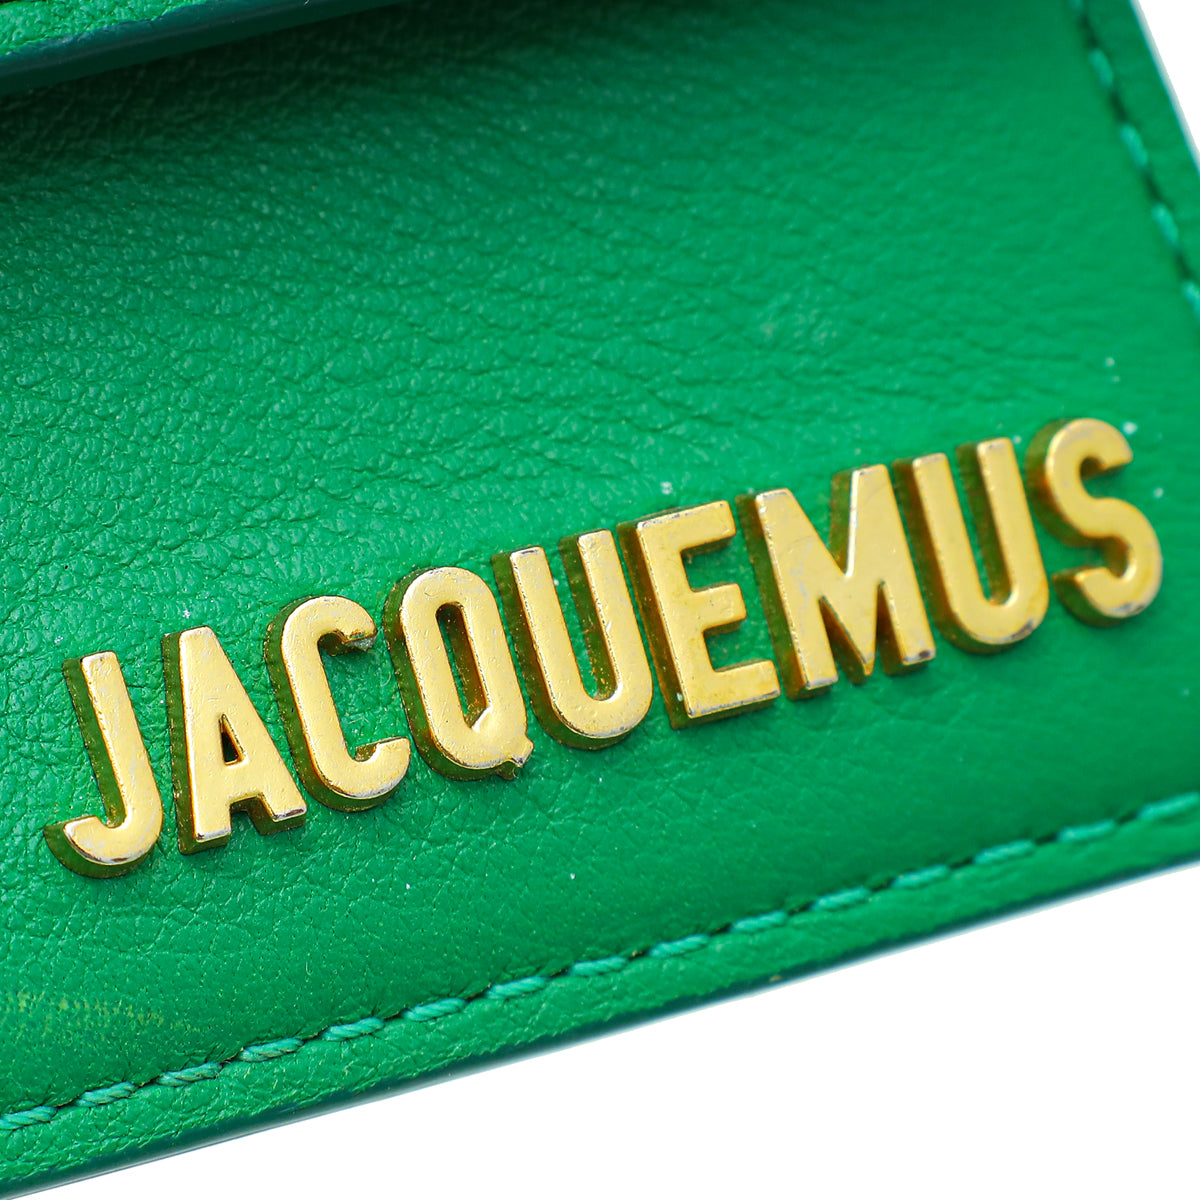 Jacquemus Green Le Chiquito Les Classiques Bag